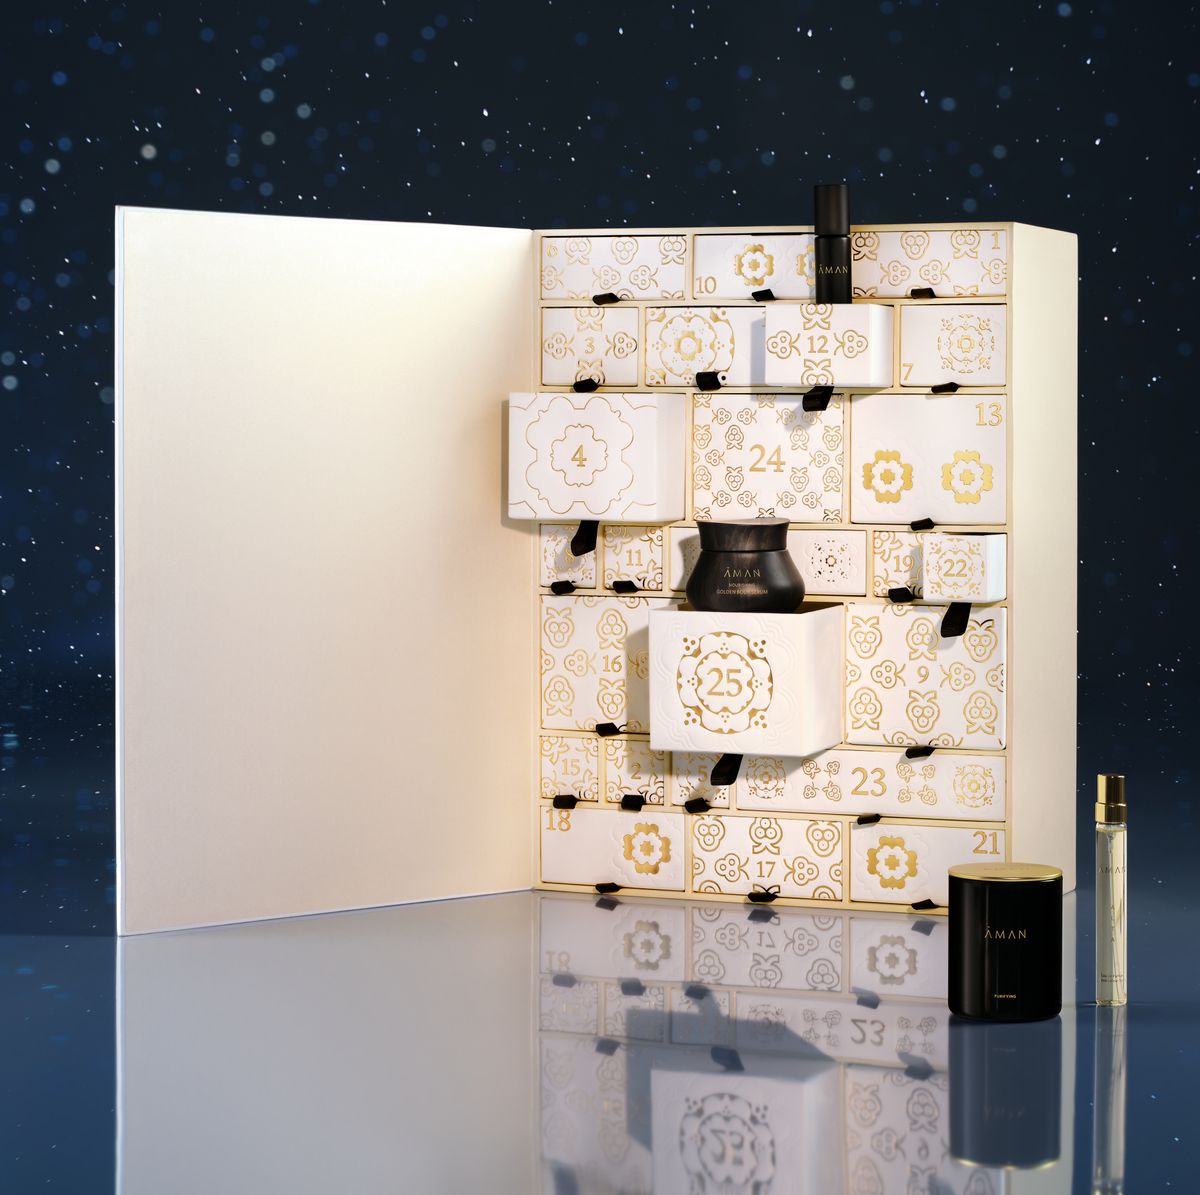 New- Louis Vuitton 2021 Advent Calendar featuring a beautiful